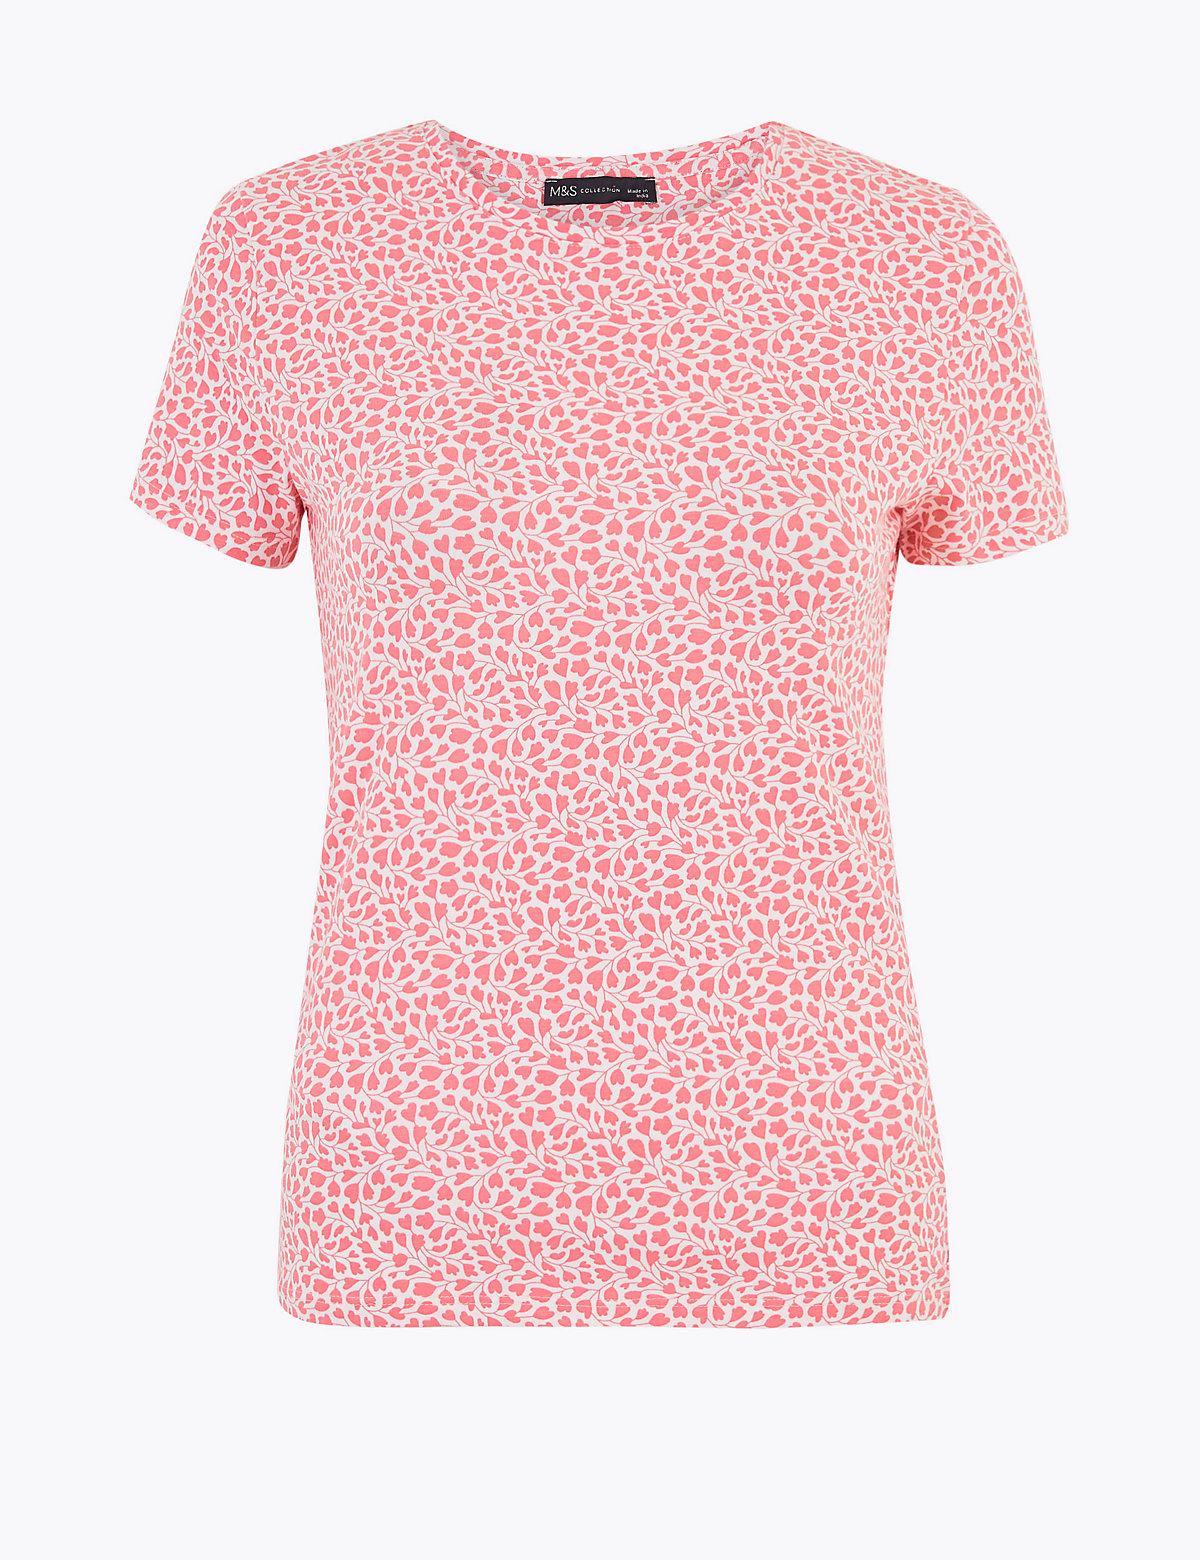 Женская футболка из хлопка с цветочным принтом(Женская футболка из хлопка с цветочным принтом)